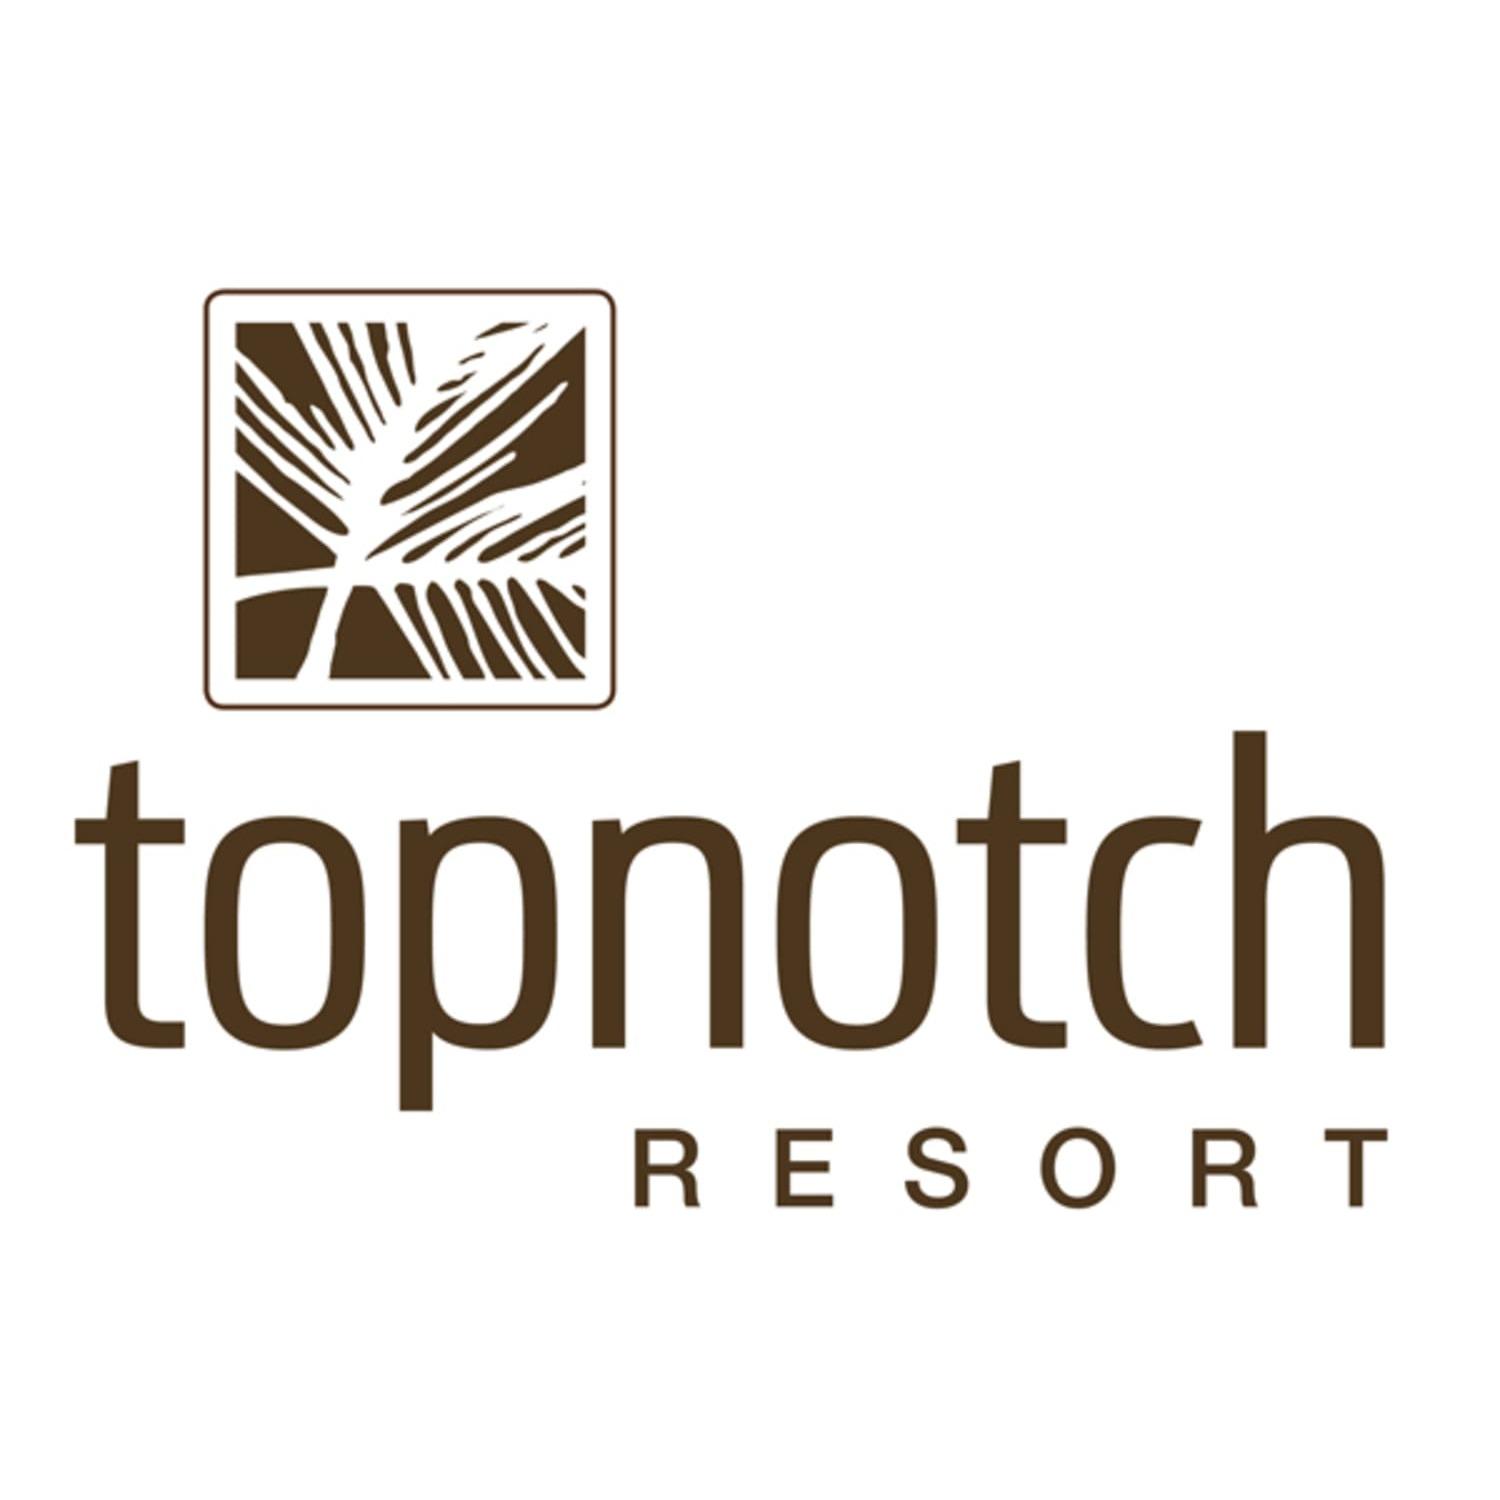 Topnotch Resort